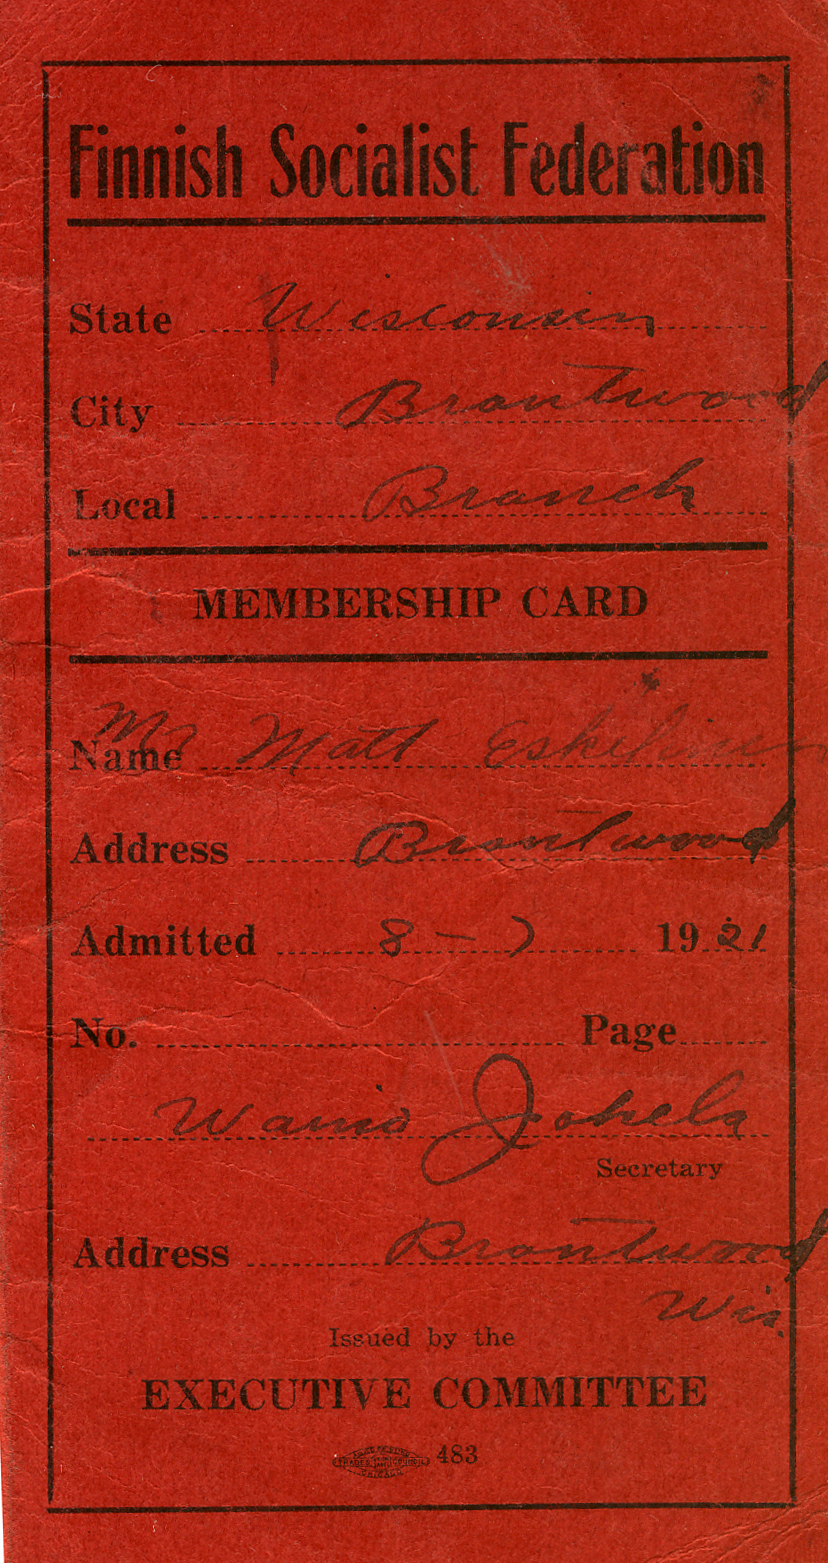 1922 Matin jäsenkortti  Ameriikassa